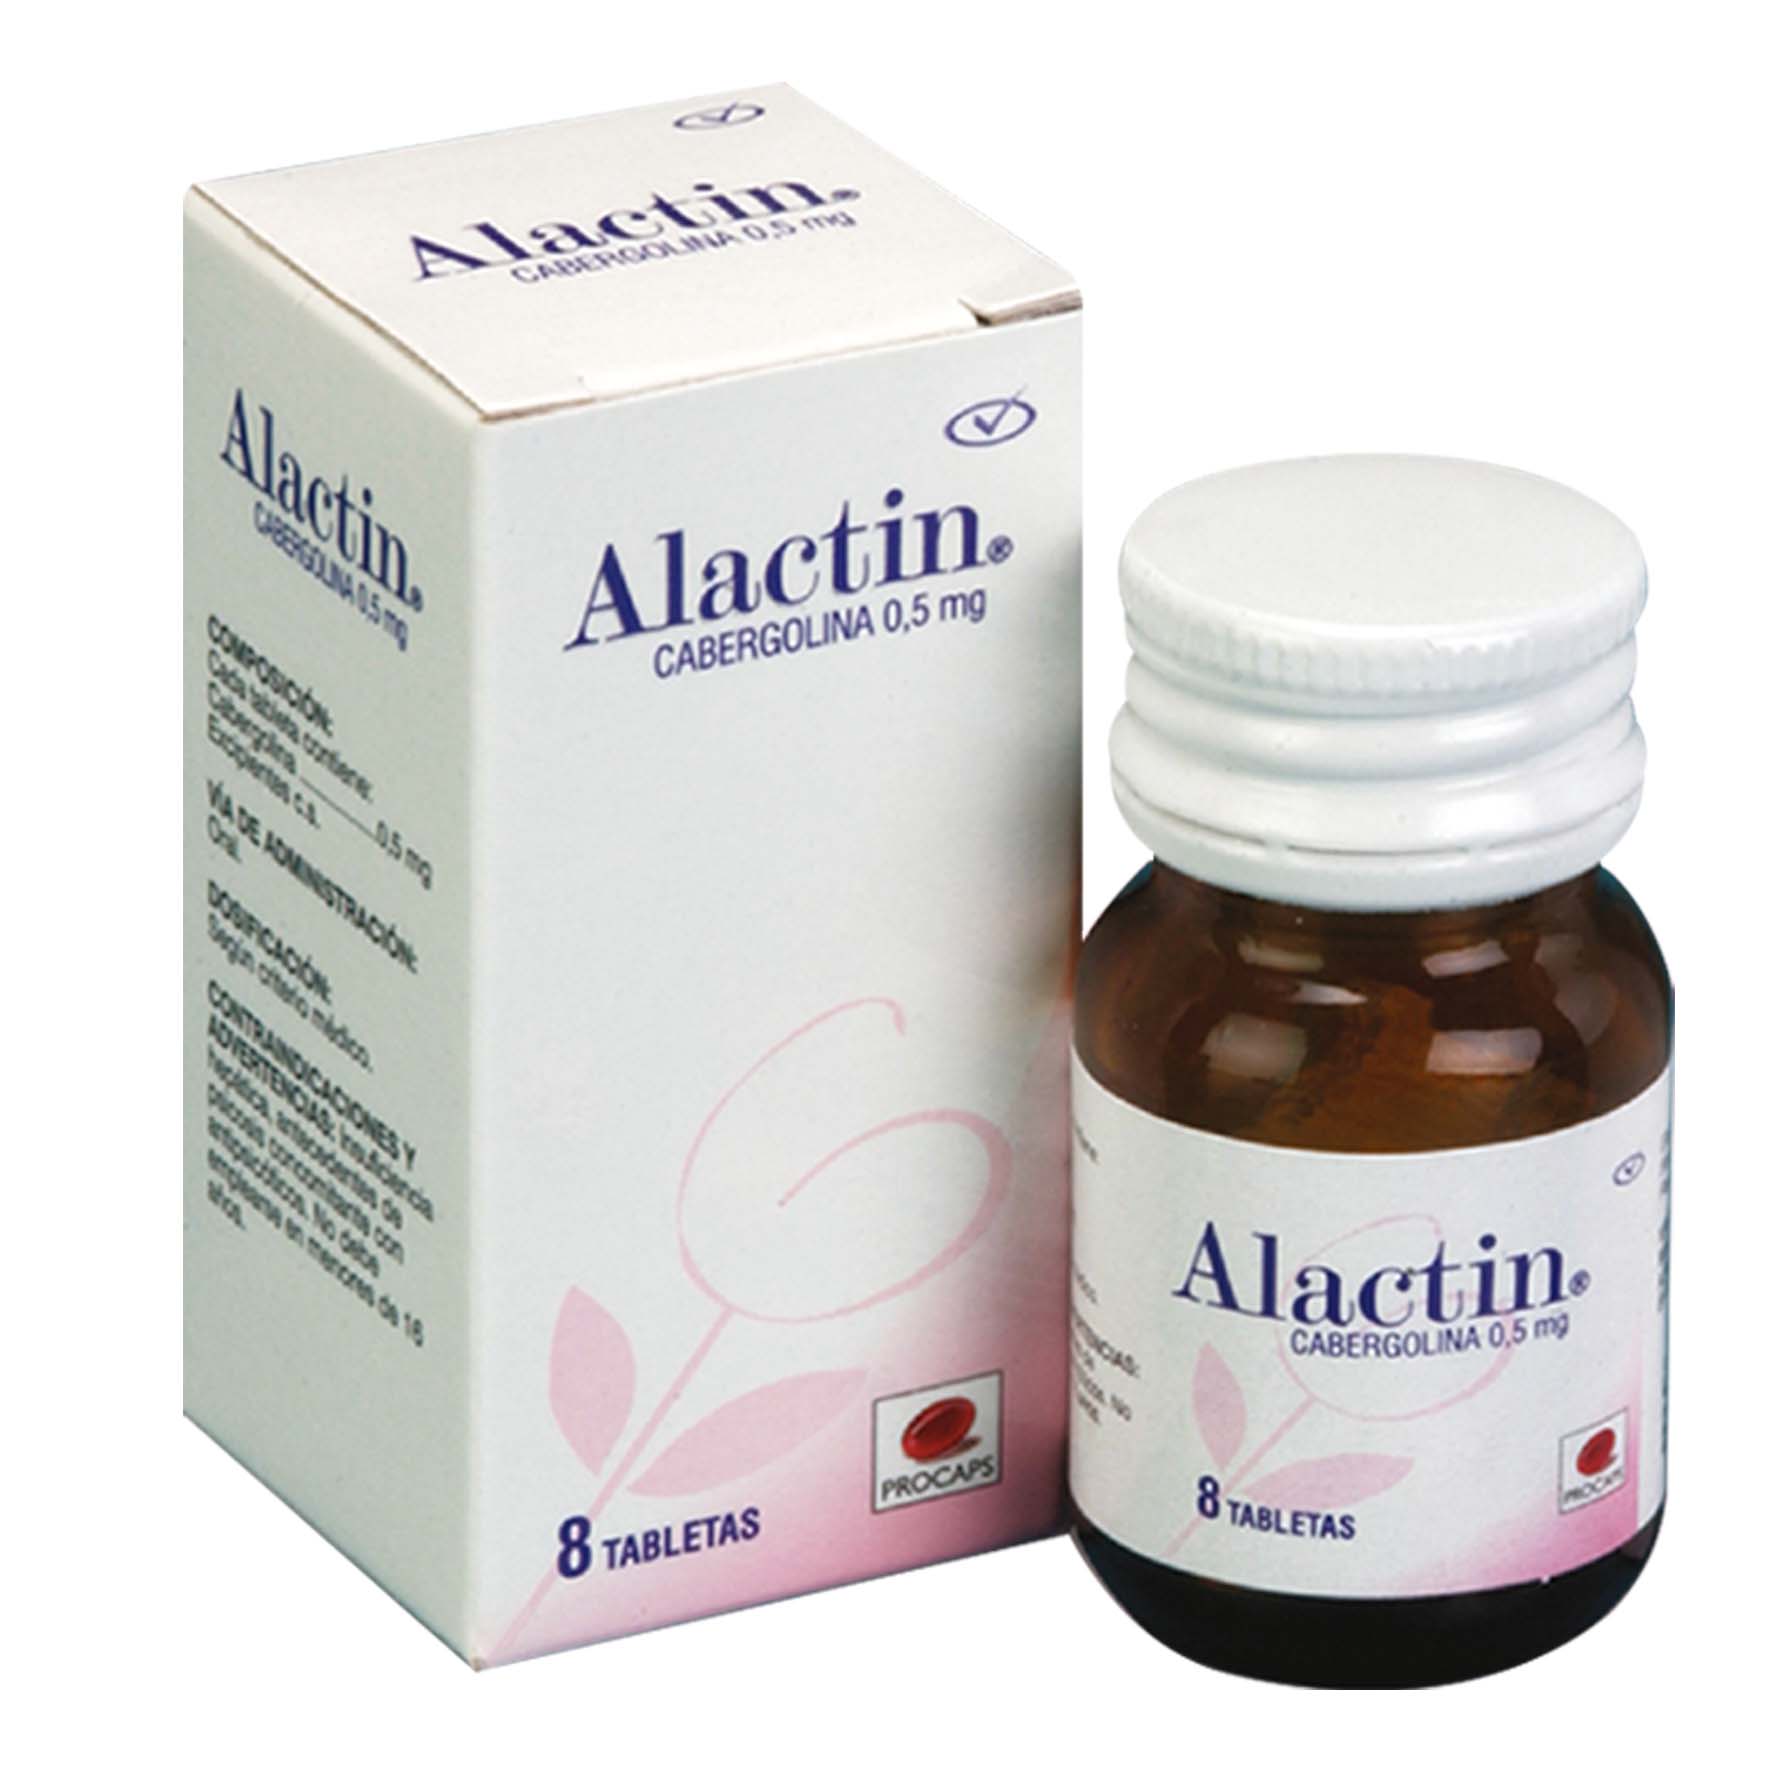 Alactin